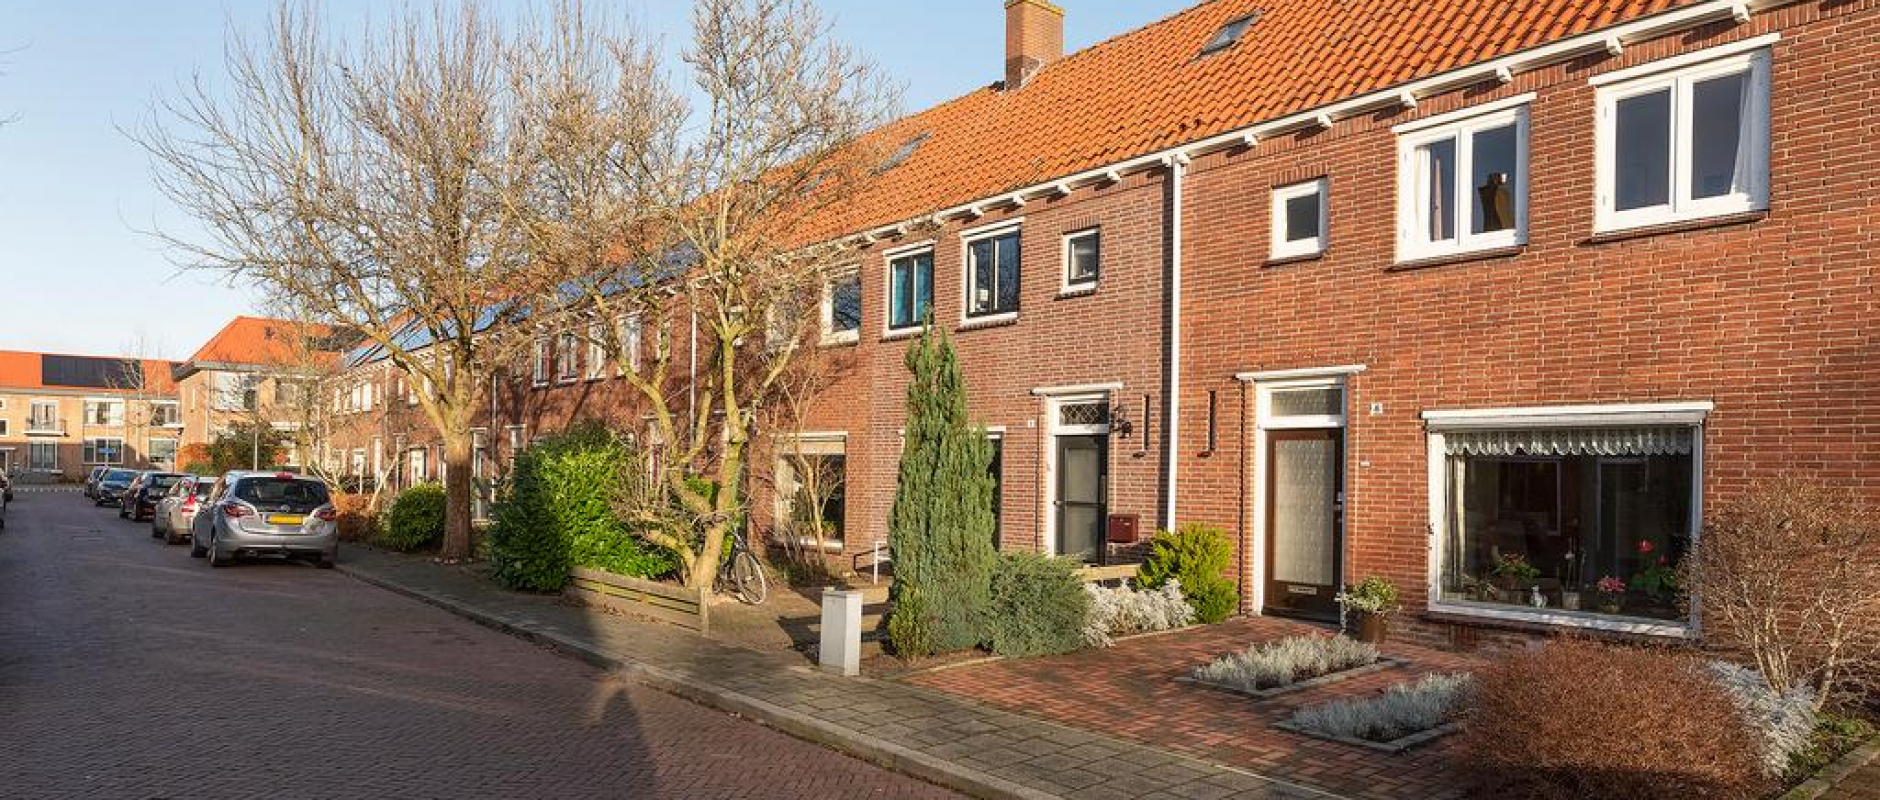 Woning te koop aan de Johan de Wittstraat 6 te Zwolle